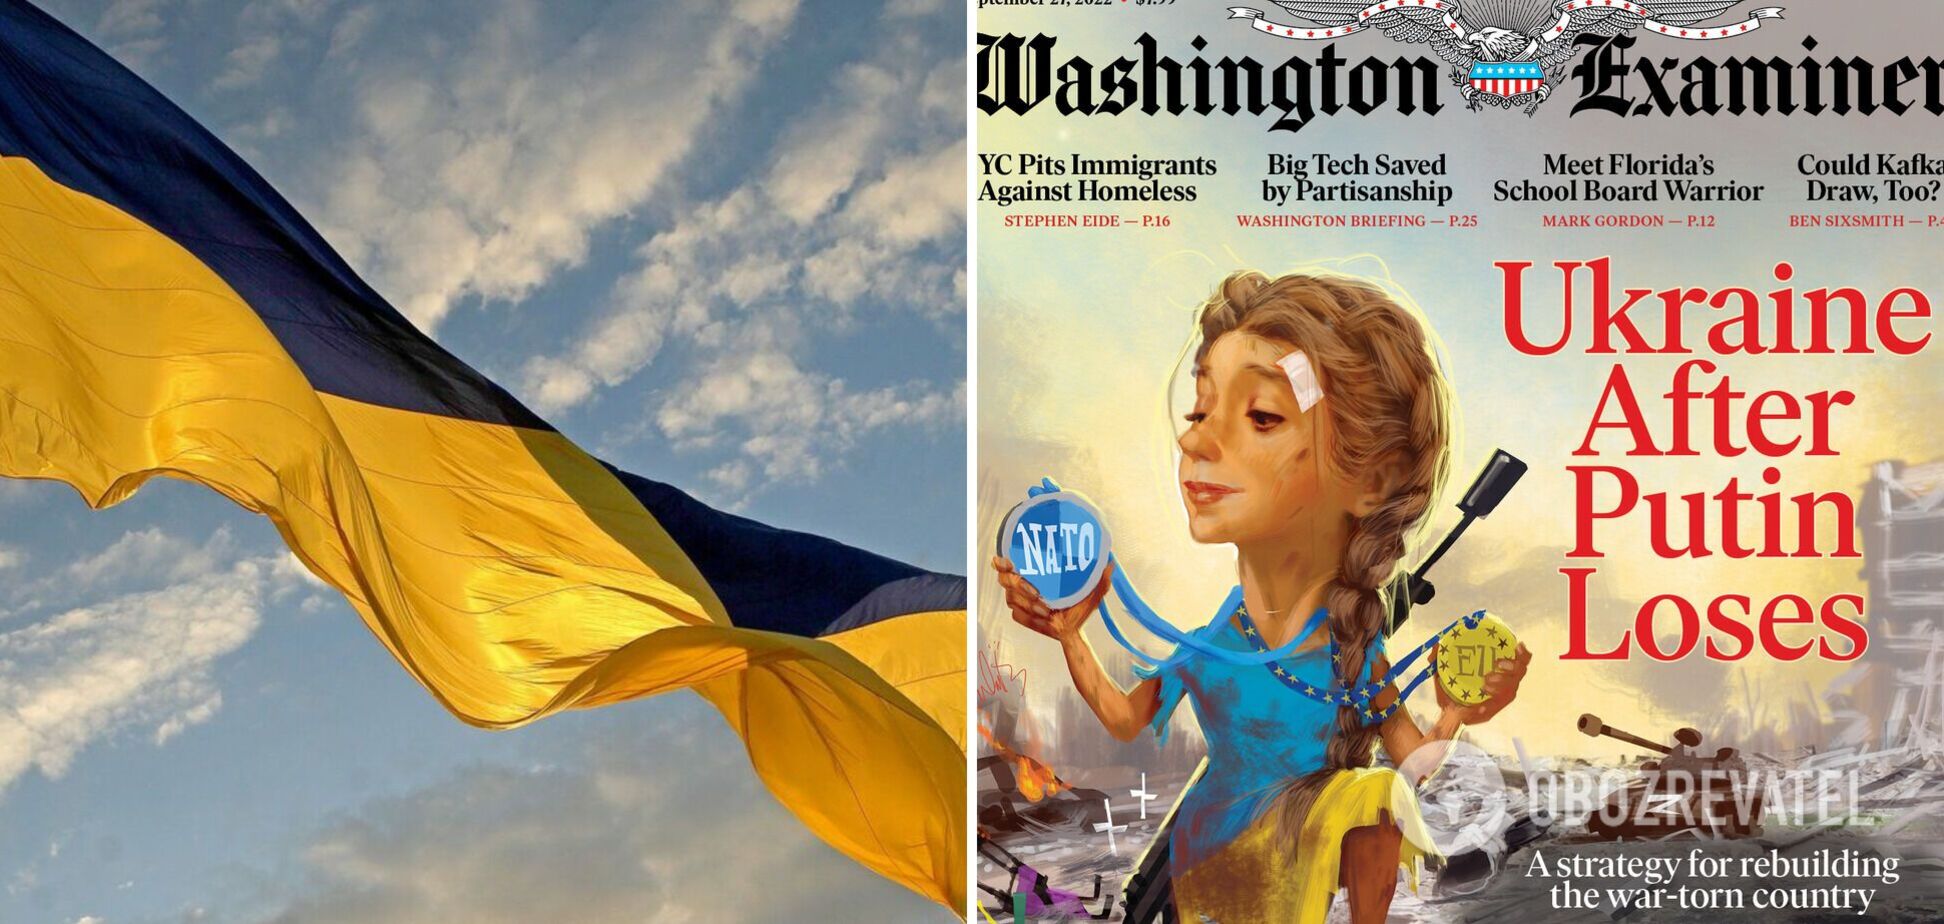 У НАТО і в ЄС: журнал Washington Examiner розмістив на своїй обкладинці 'Україну без Путіна'   